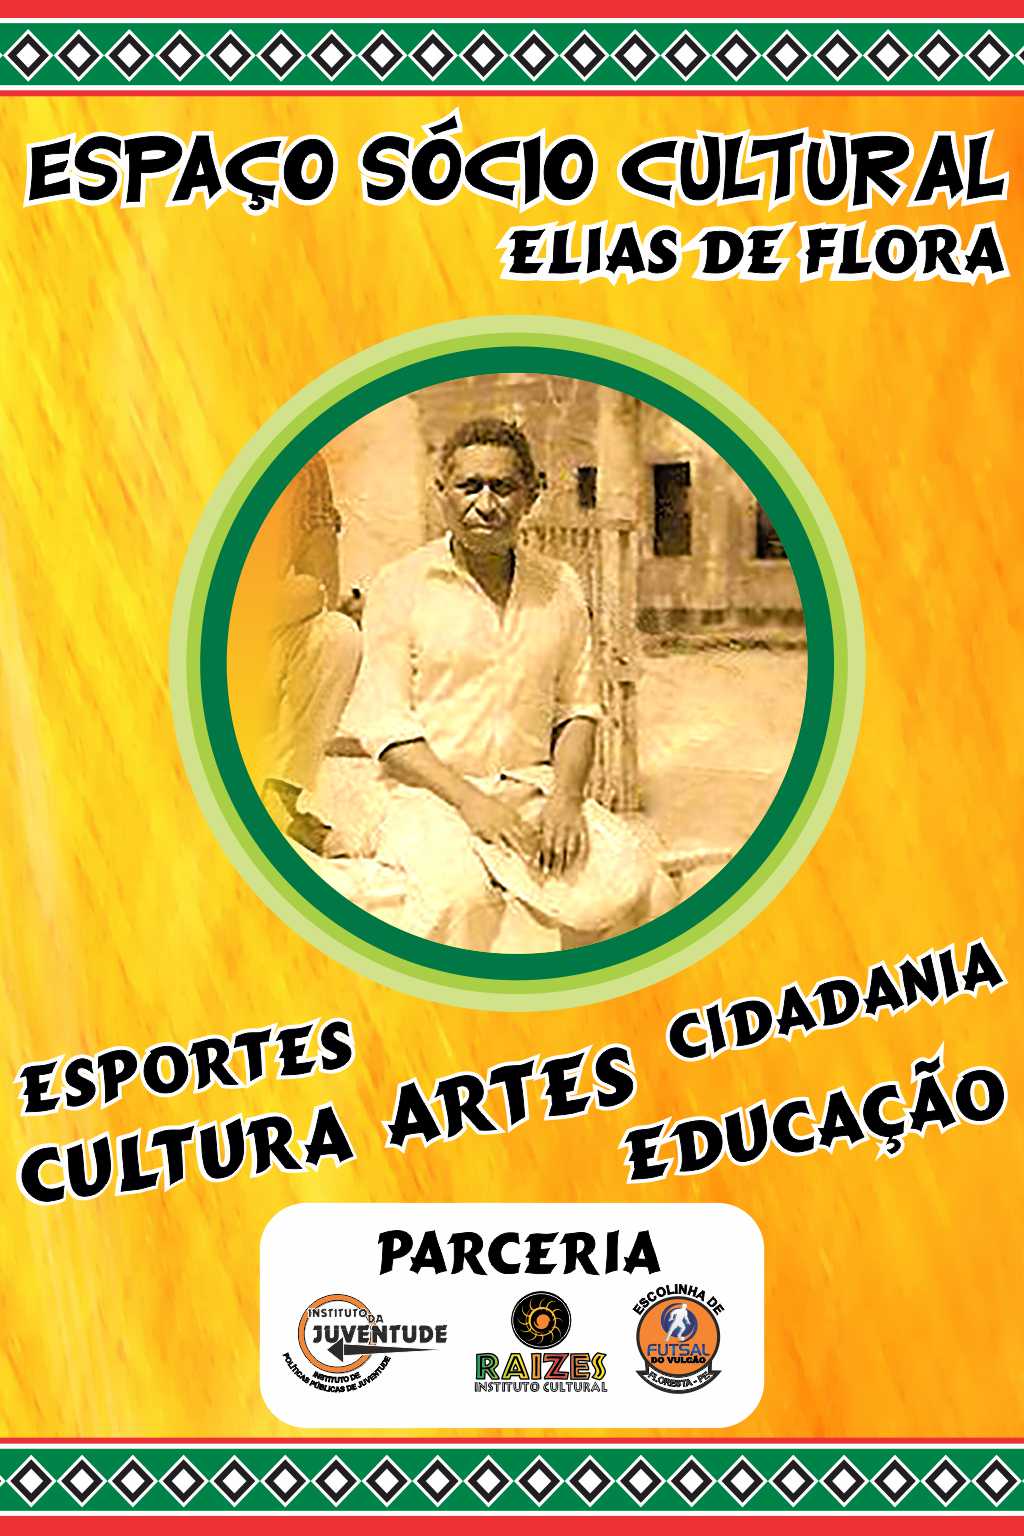 ESPAÇO SÓCIO CULTURAL ELIAS DE FLORA